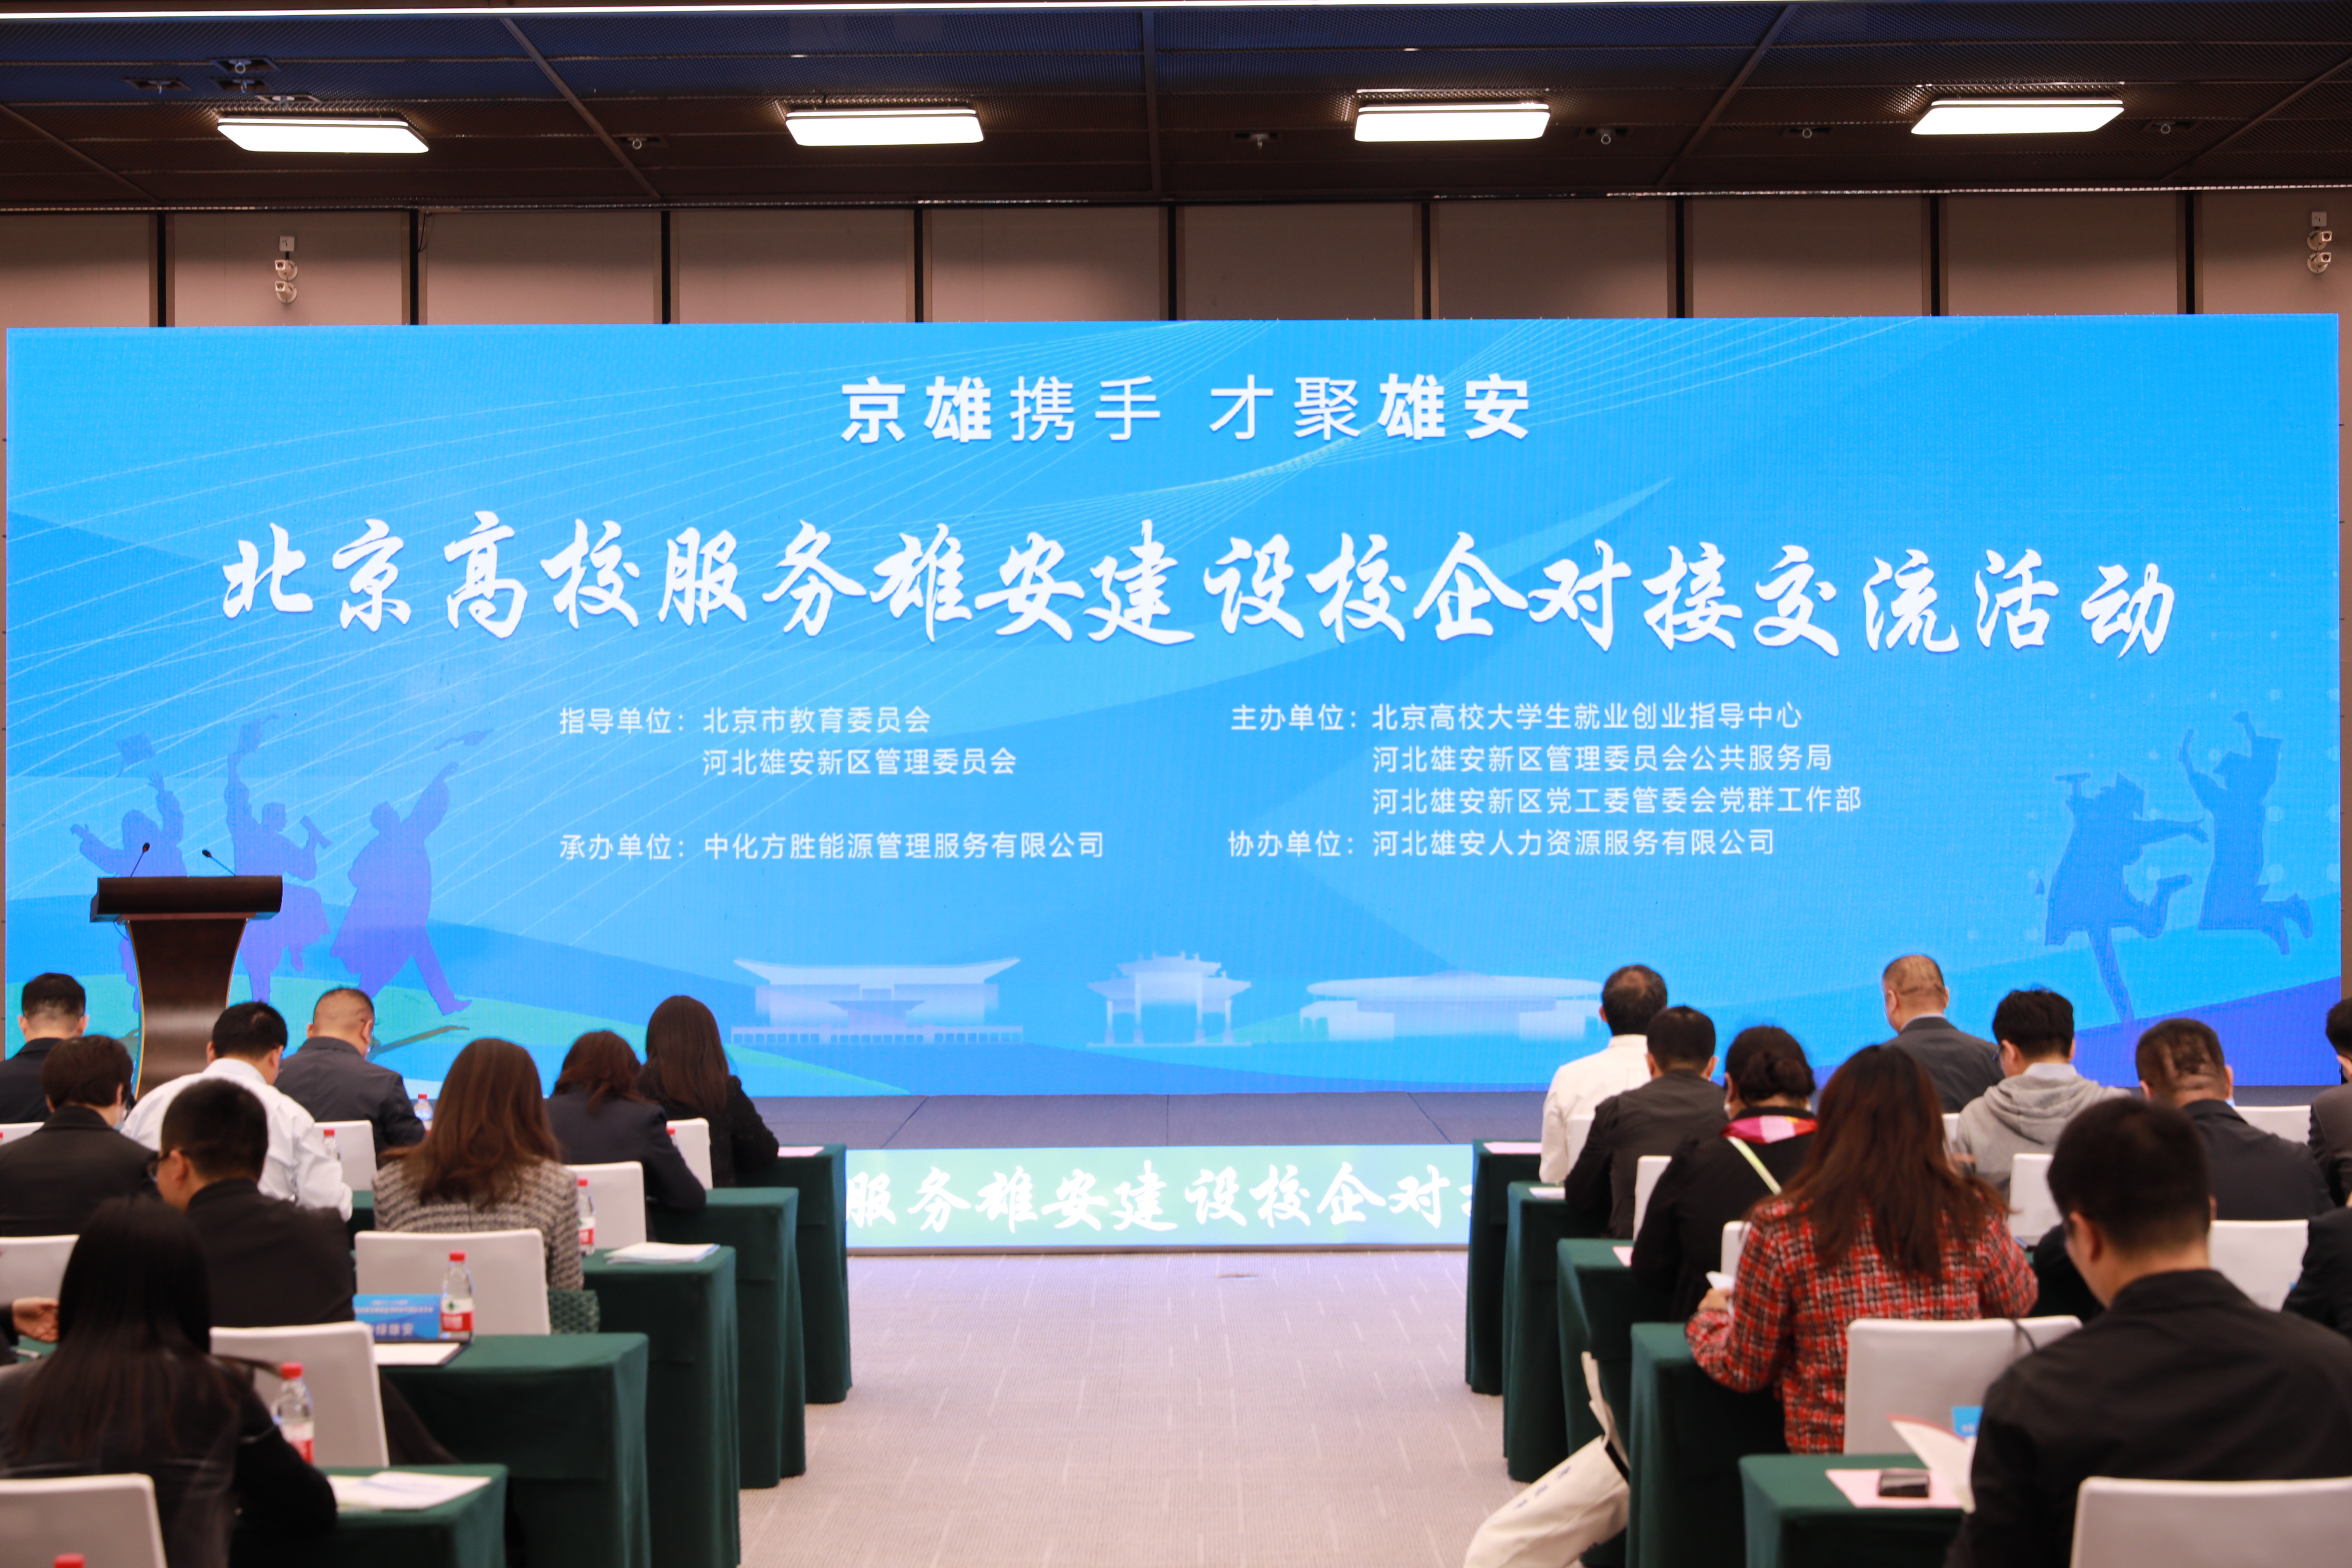 北京高校服務雄安建設校企對接交流活動。